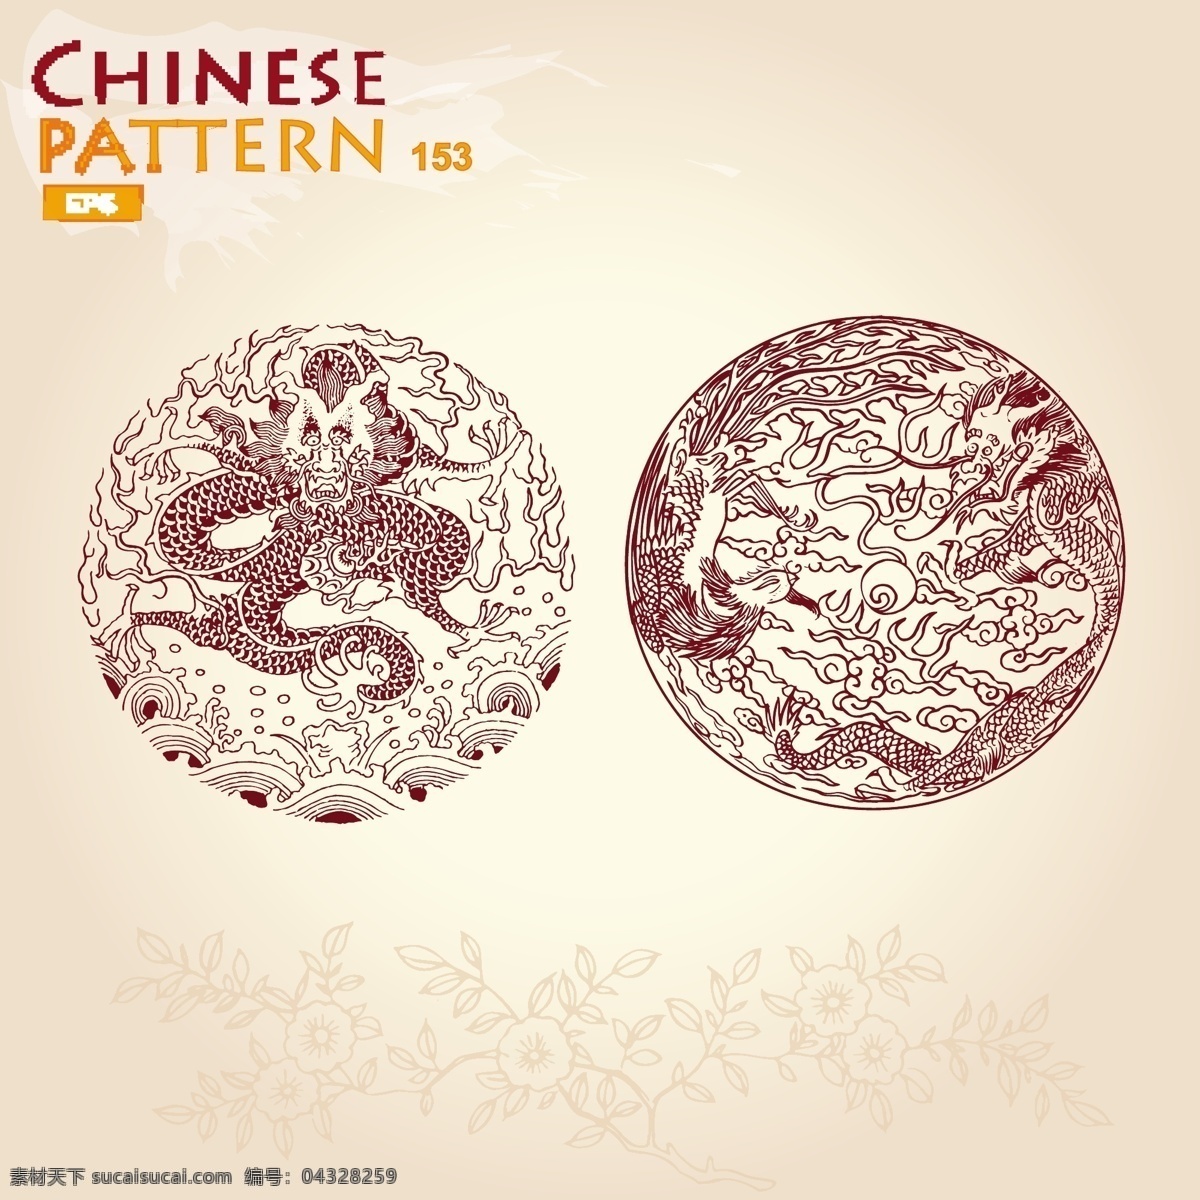 中国元素 中国传统素材 手绘 边框 相框 龙 印章 中国龙 中国风 矢量